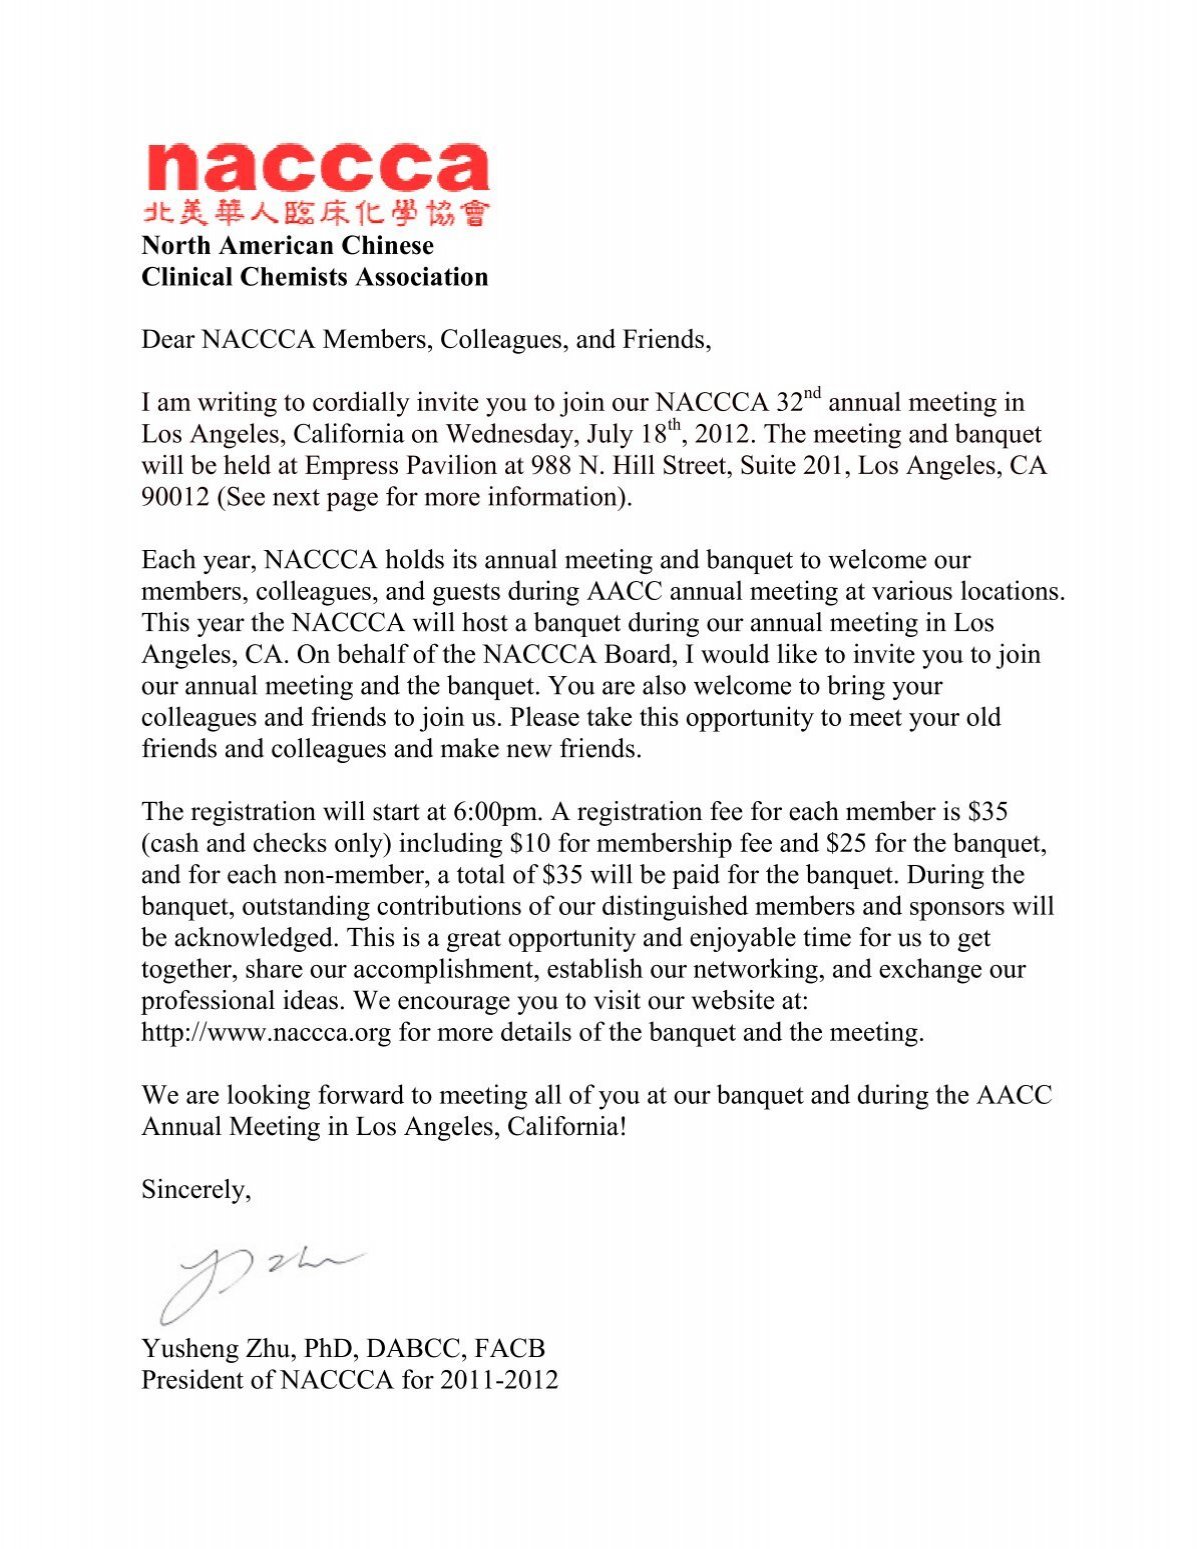 Invitation letter from NACCCA President